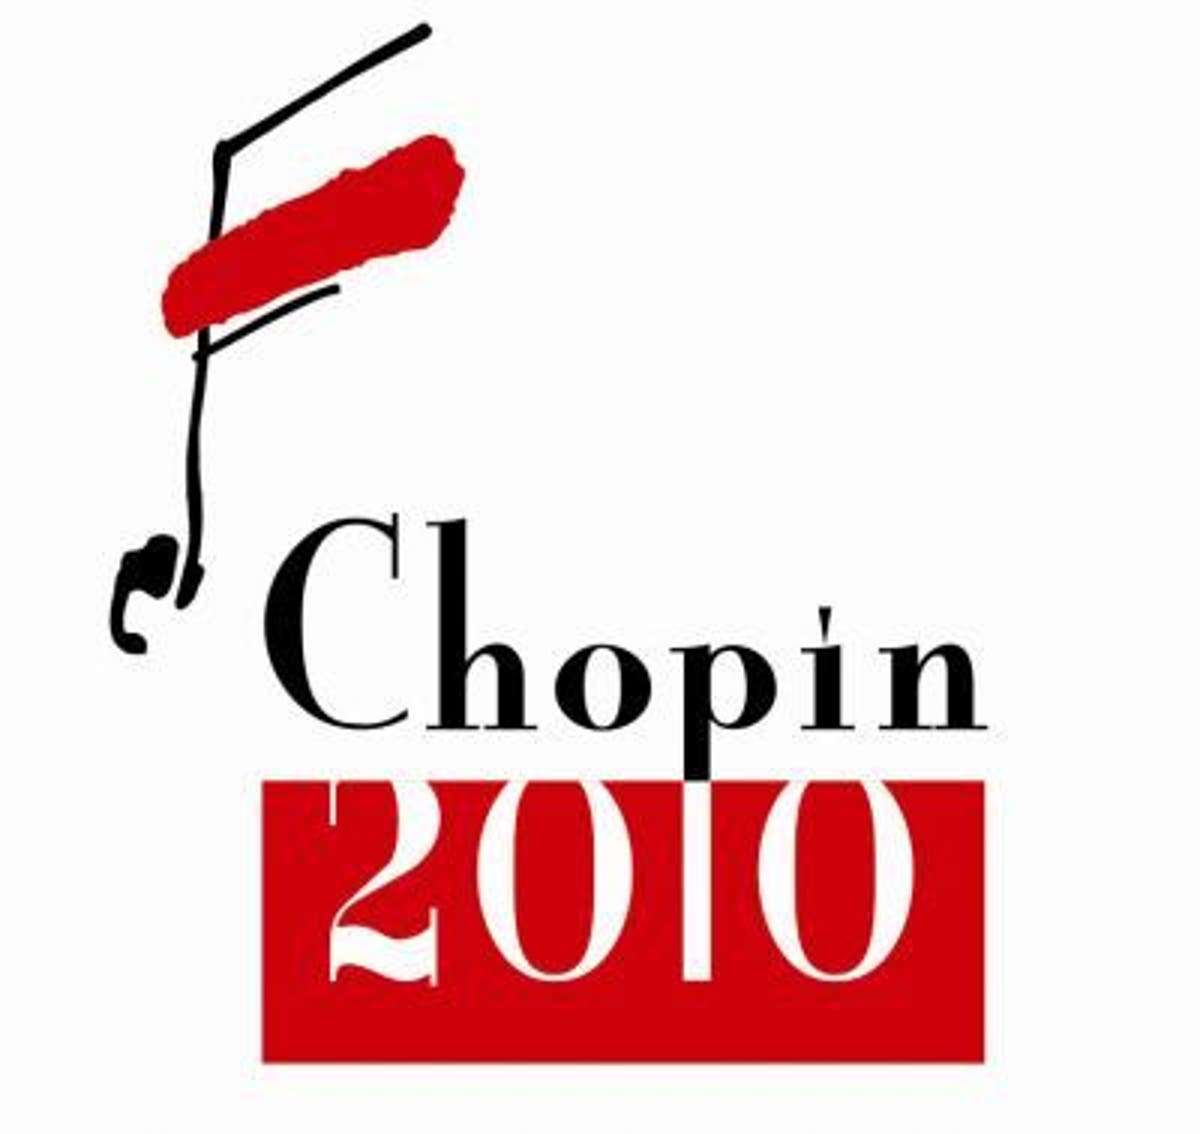 Polska otwiera obchody 200. urodzin Chopina |  Niezależny